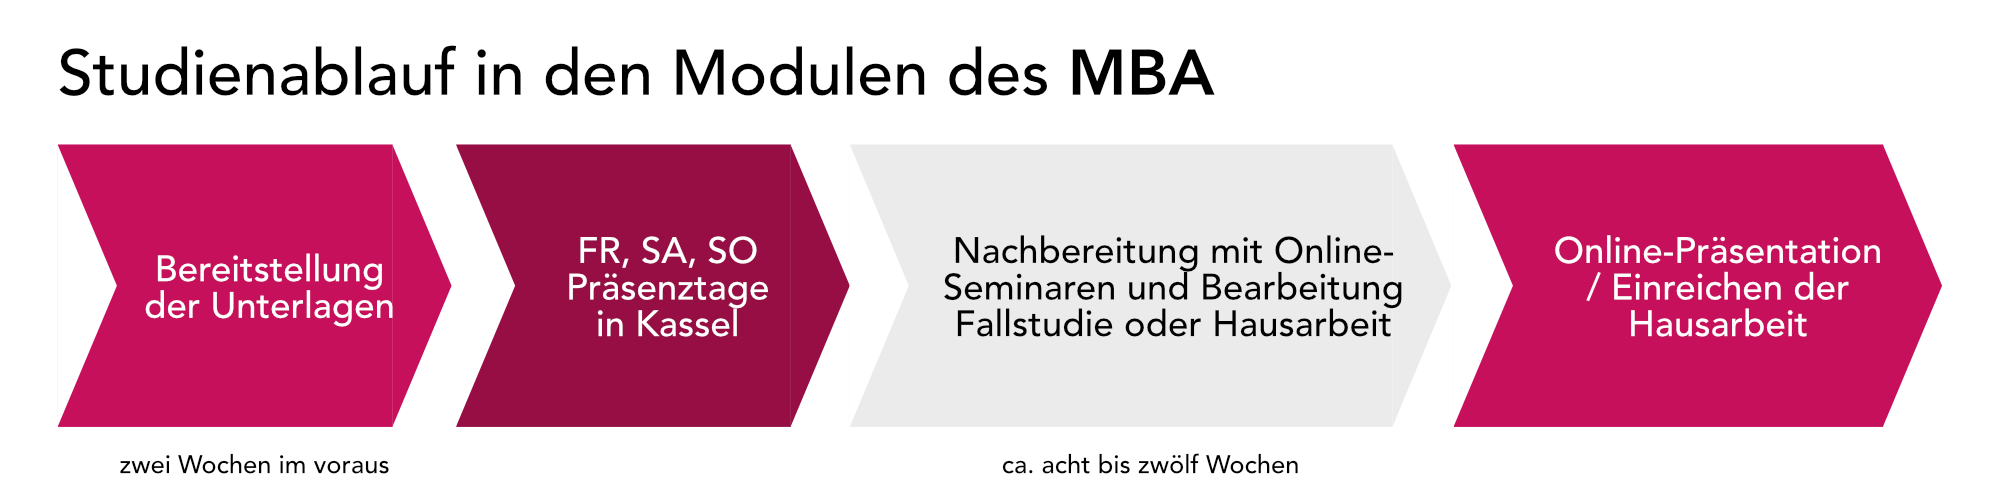 Studienablauf MBA